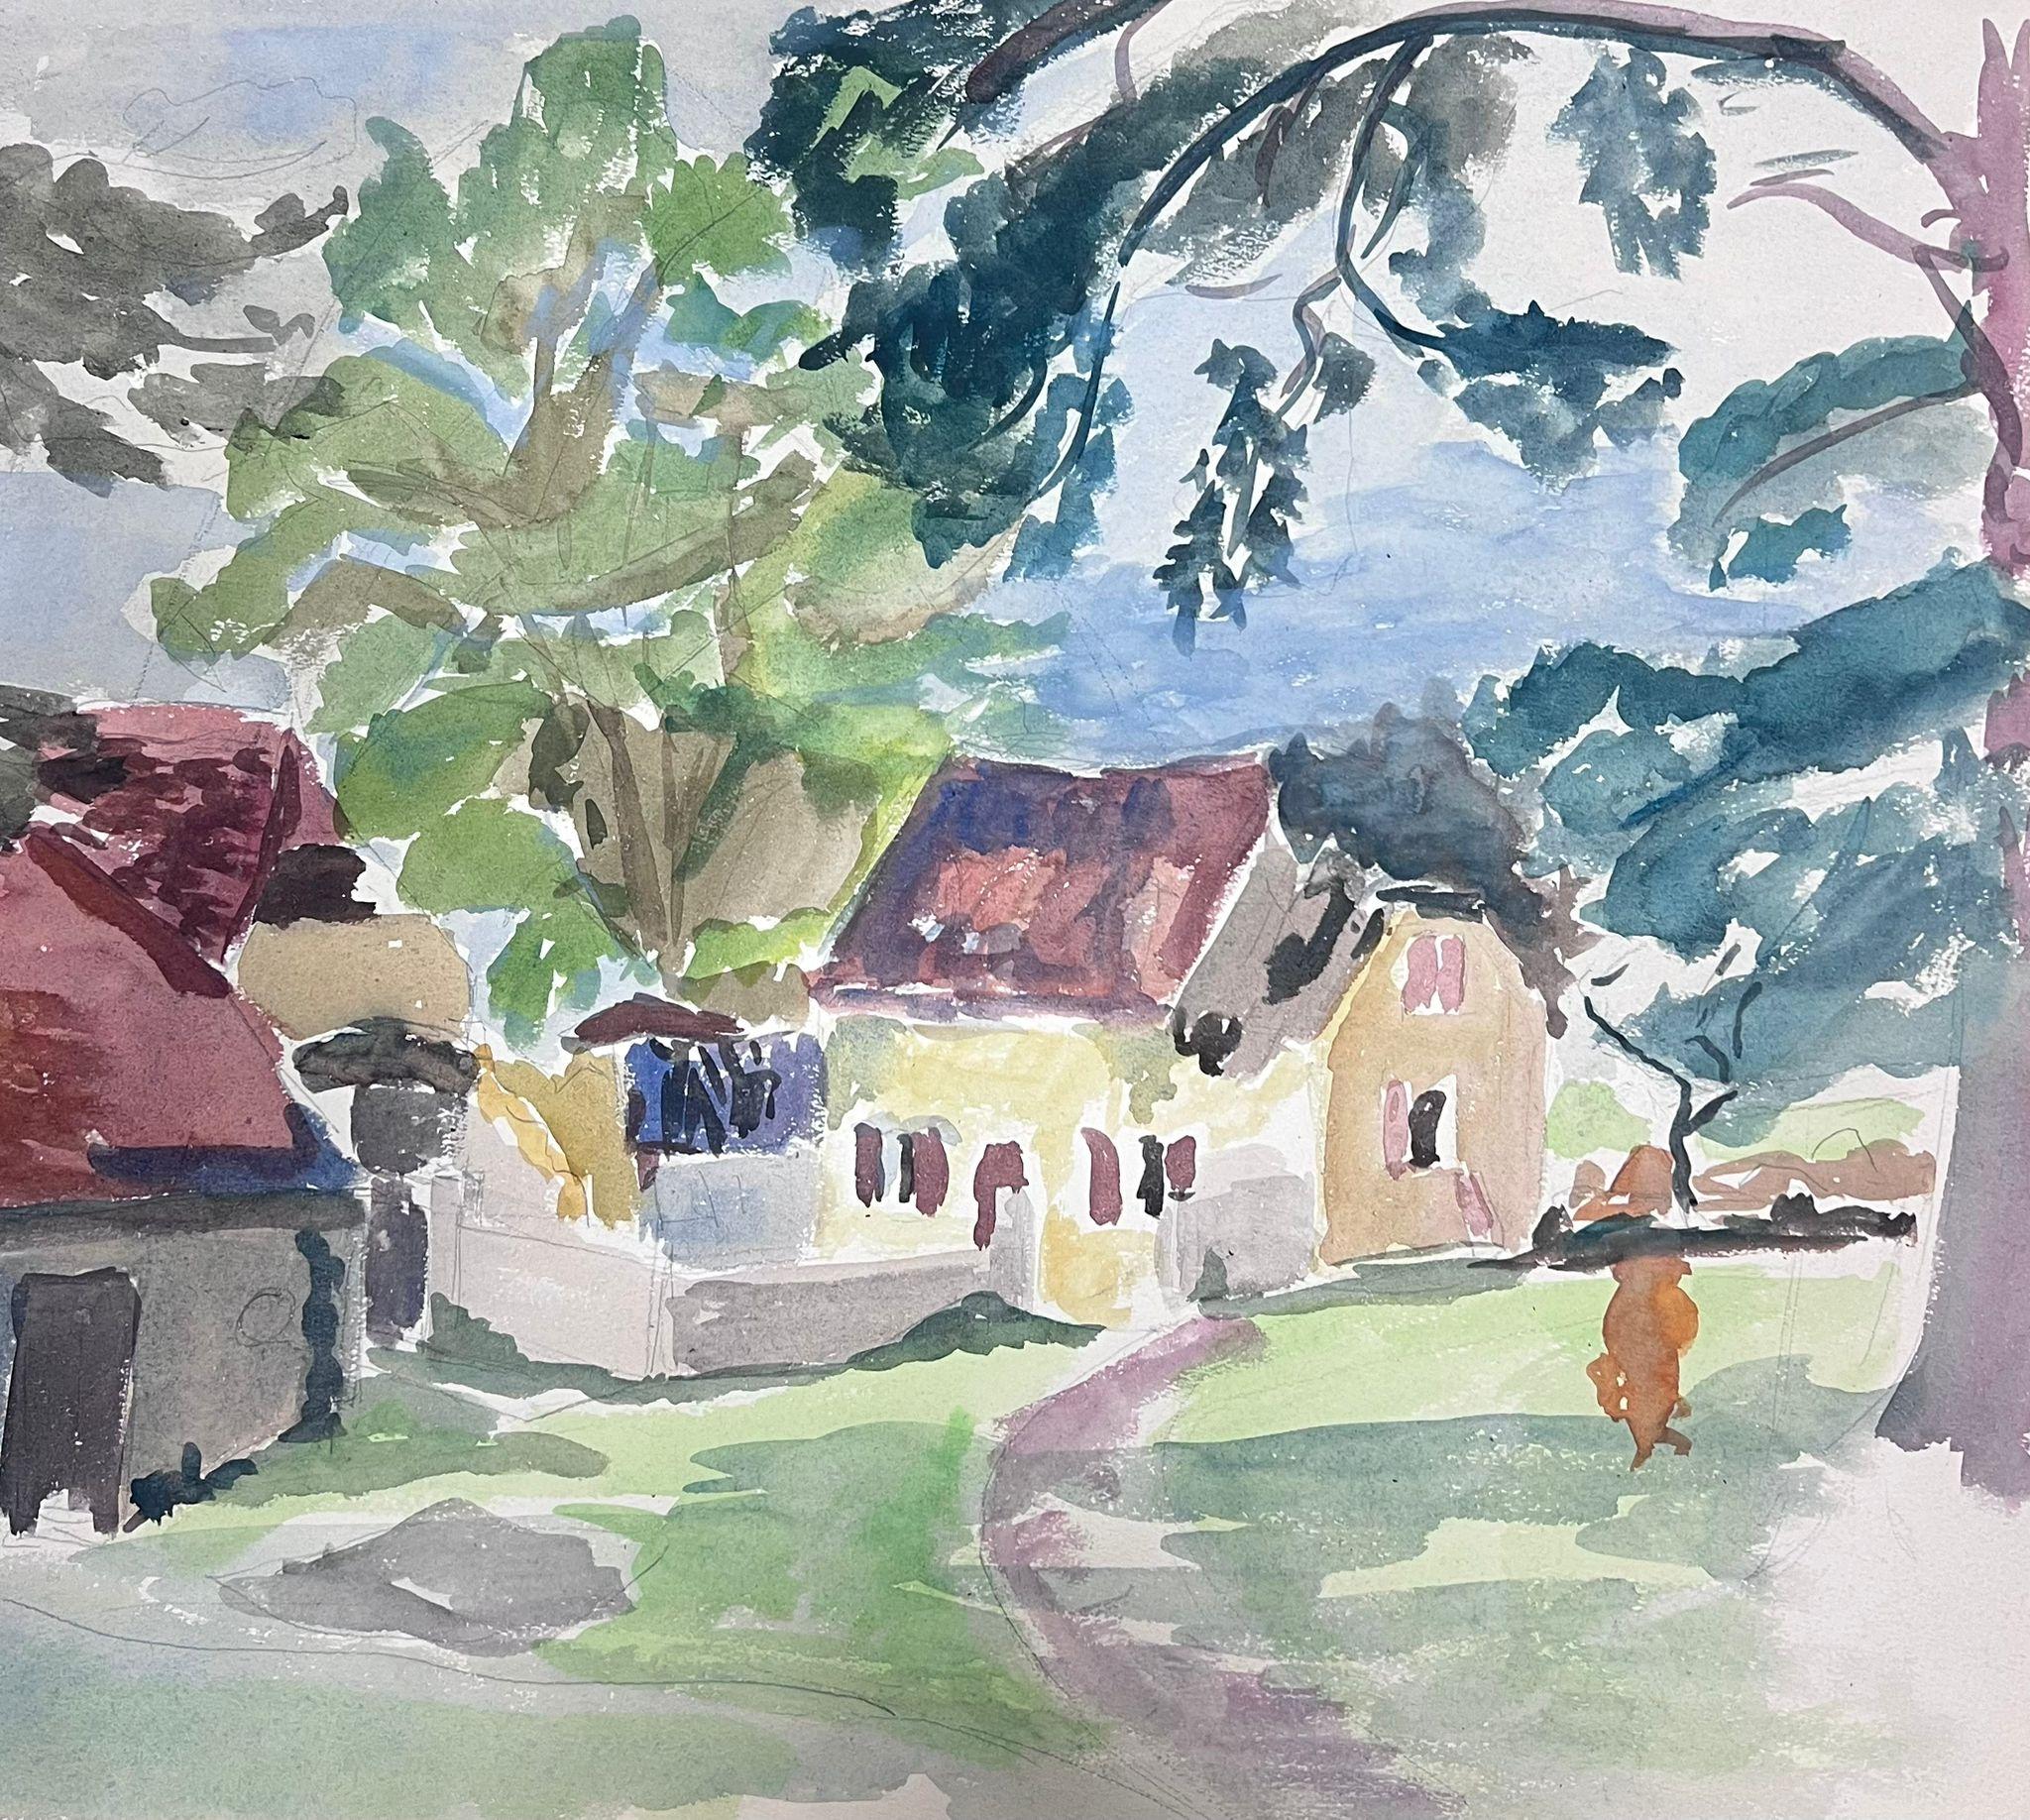 Landscape Painting Guy Nicod - Peinture post-impressionniste française du milieu du 20e siècle, représentant une route côtière vers un chalet